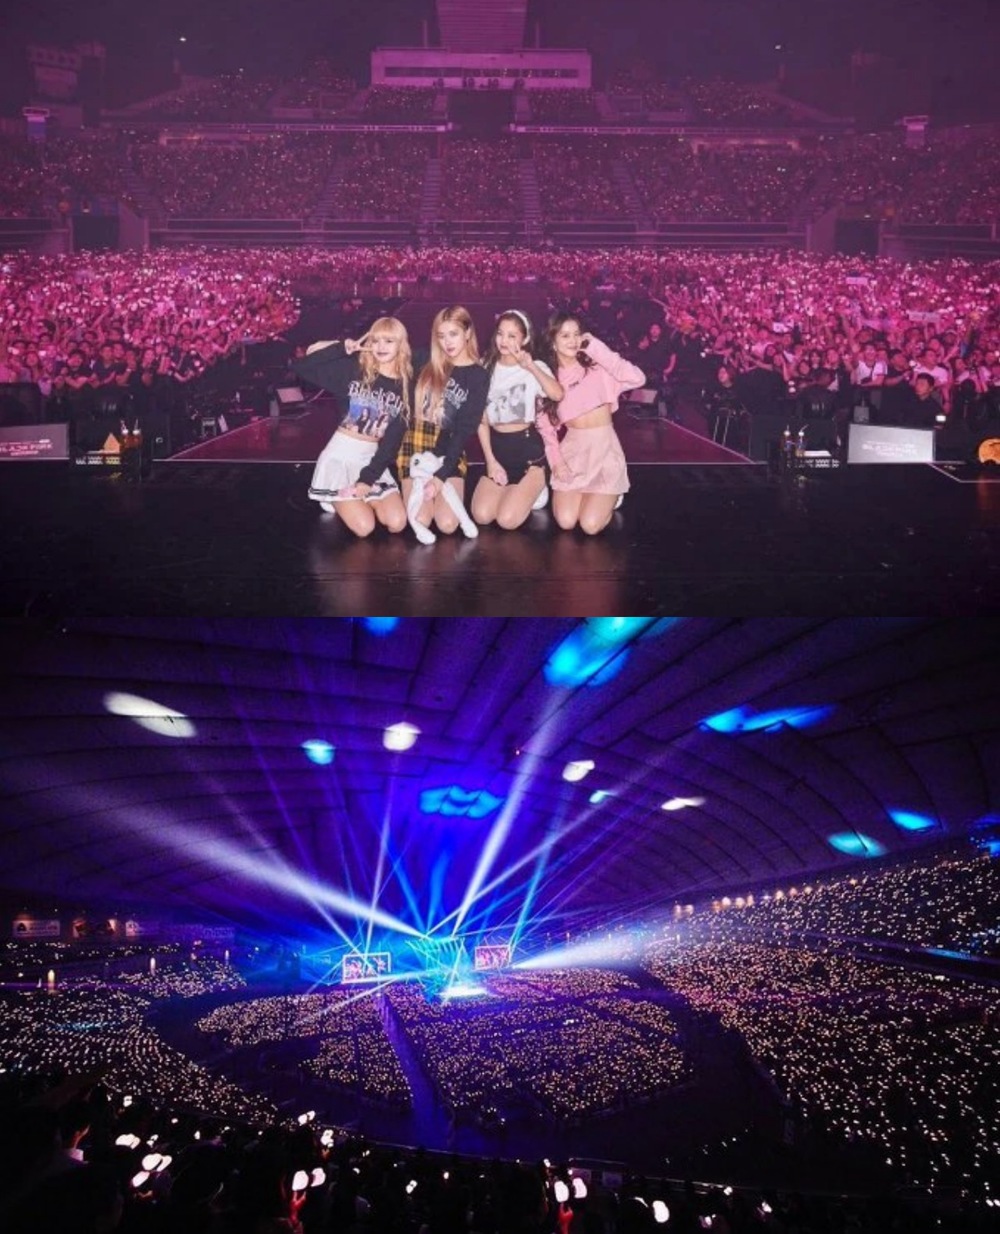  Sân khấu huyền thoại của BLACKPINK tại Tokyo Dome được tổ chức cùng ngày với MAMA. (Ảnh: Pinterest)